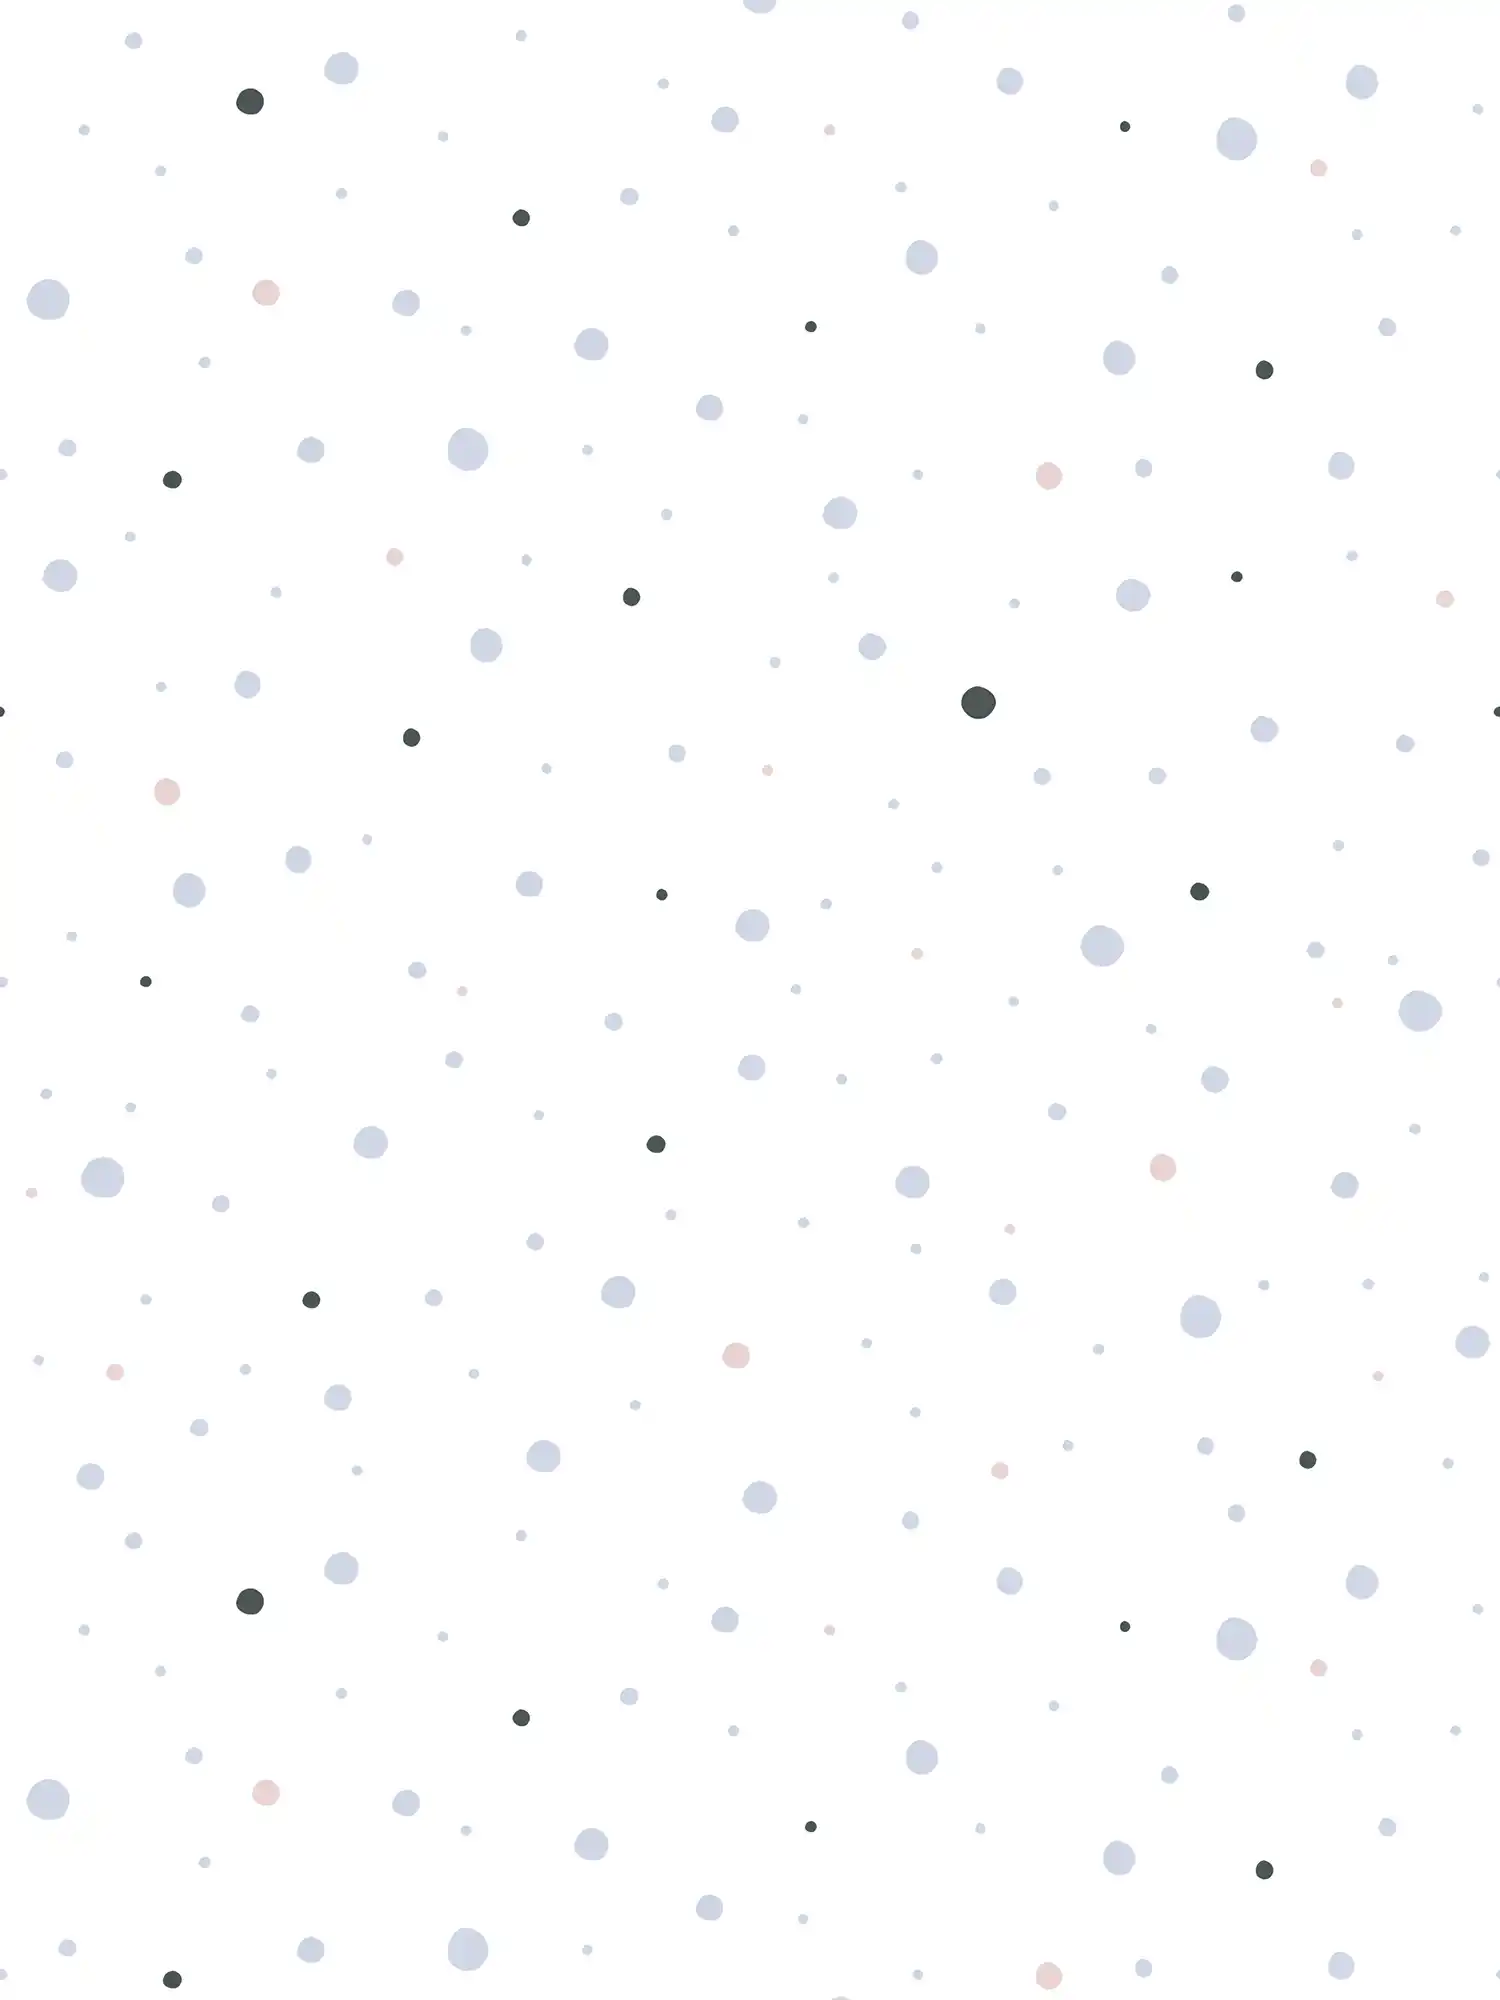         Nursery wallpaper dots - grey, black, white
    